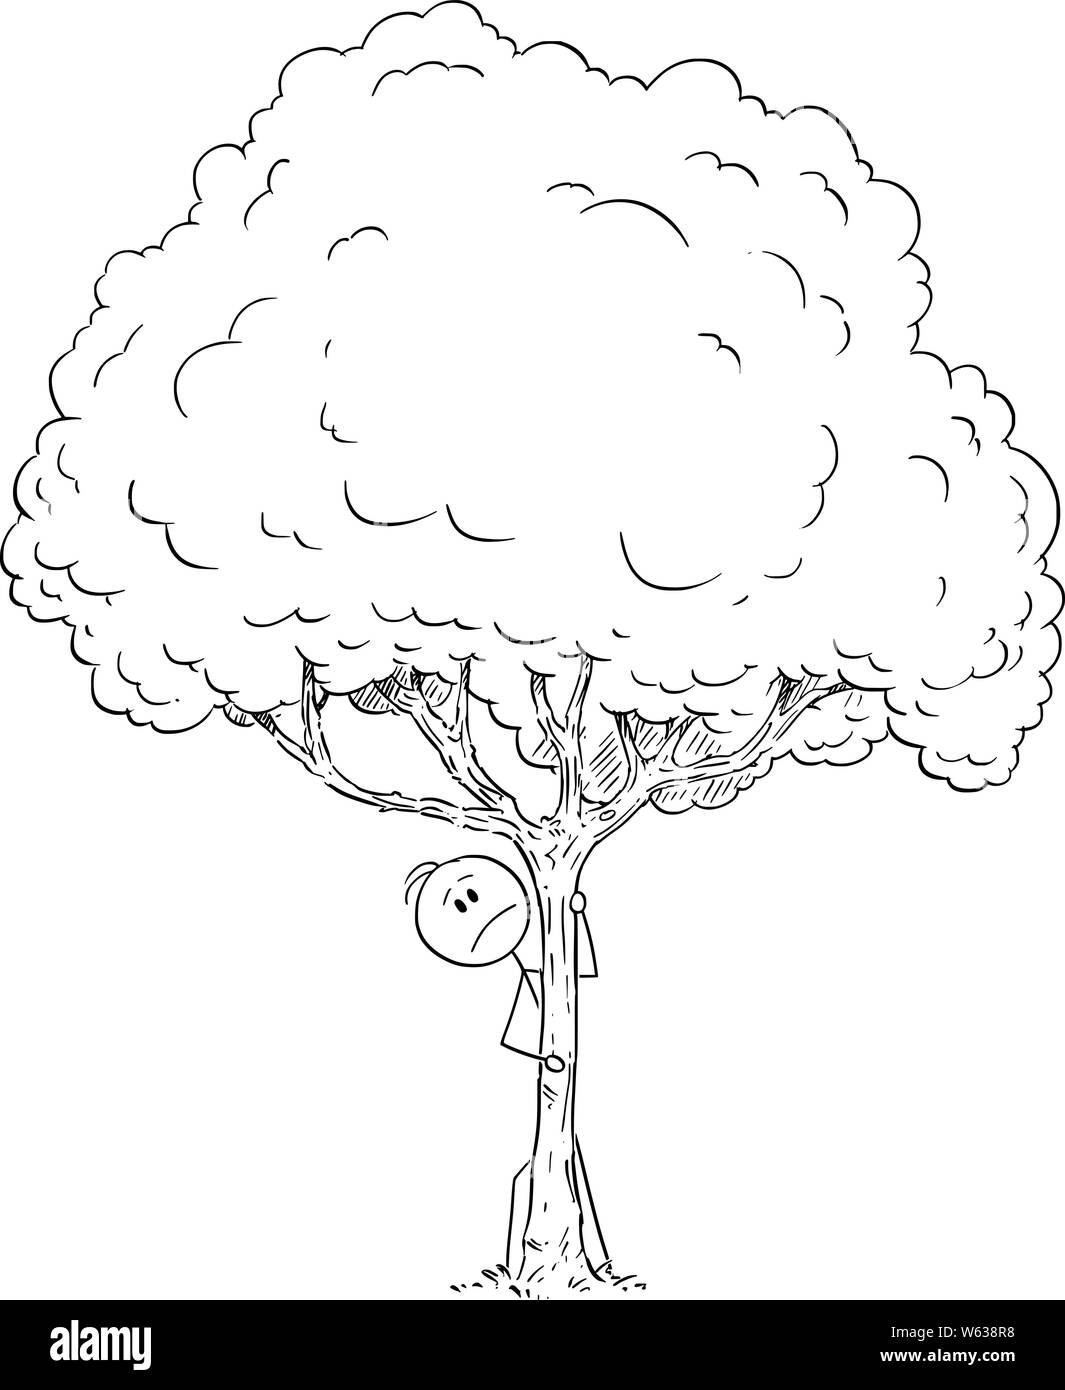 Vektor cartoon Strichmännchen Zeichnen konzeptionelle Darstellung der ängstlich oder besorgt oder Angst oder neugierig Mann versteckt sich hinter Baum. Stock Vektor